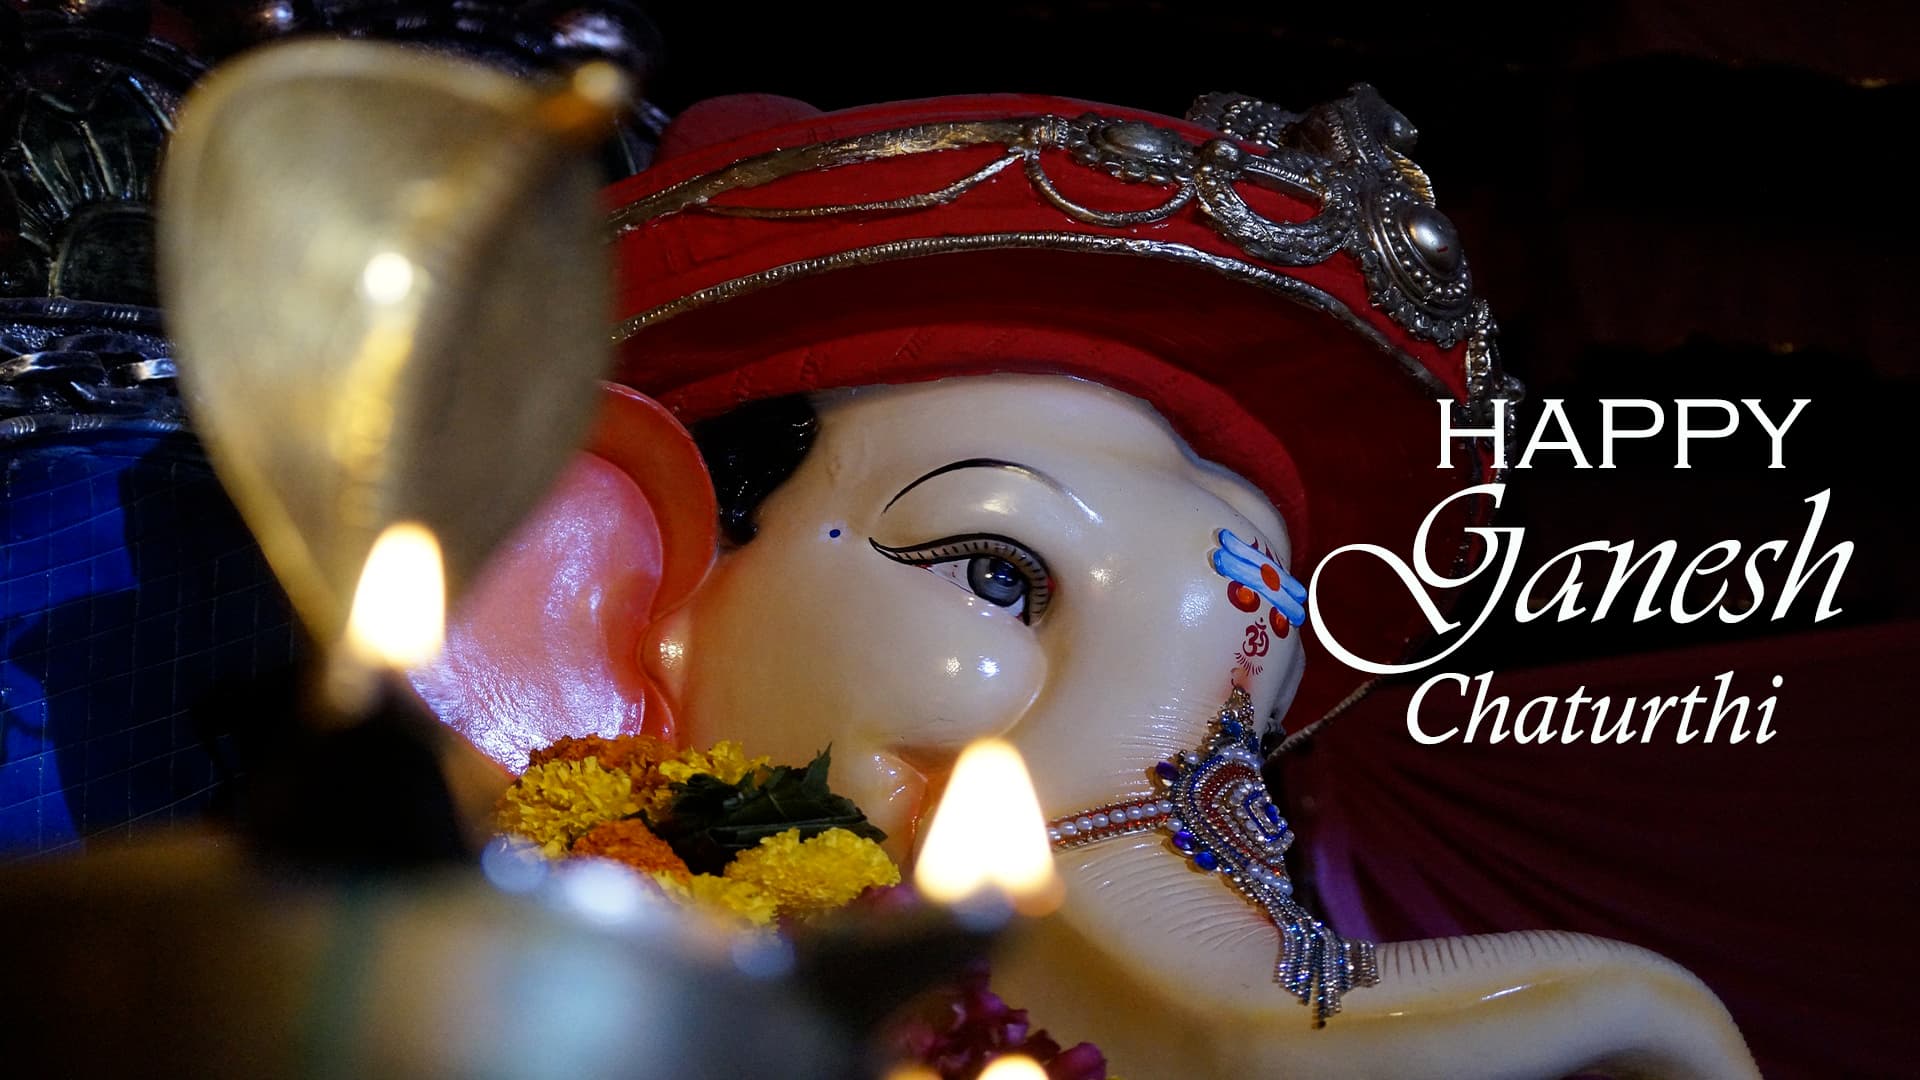 Happy Ganesh Chaturthi 2021 Images